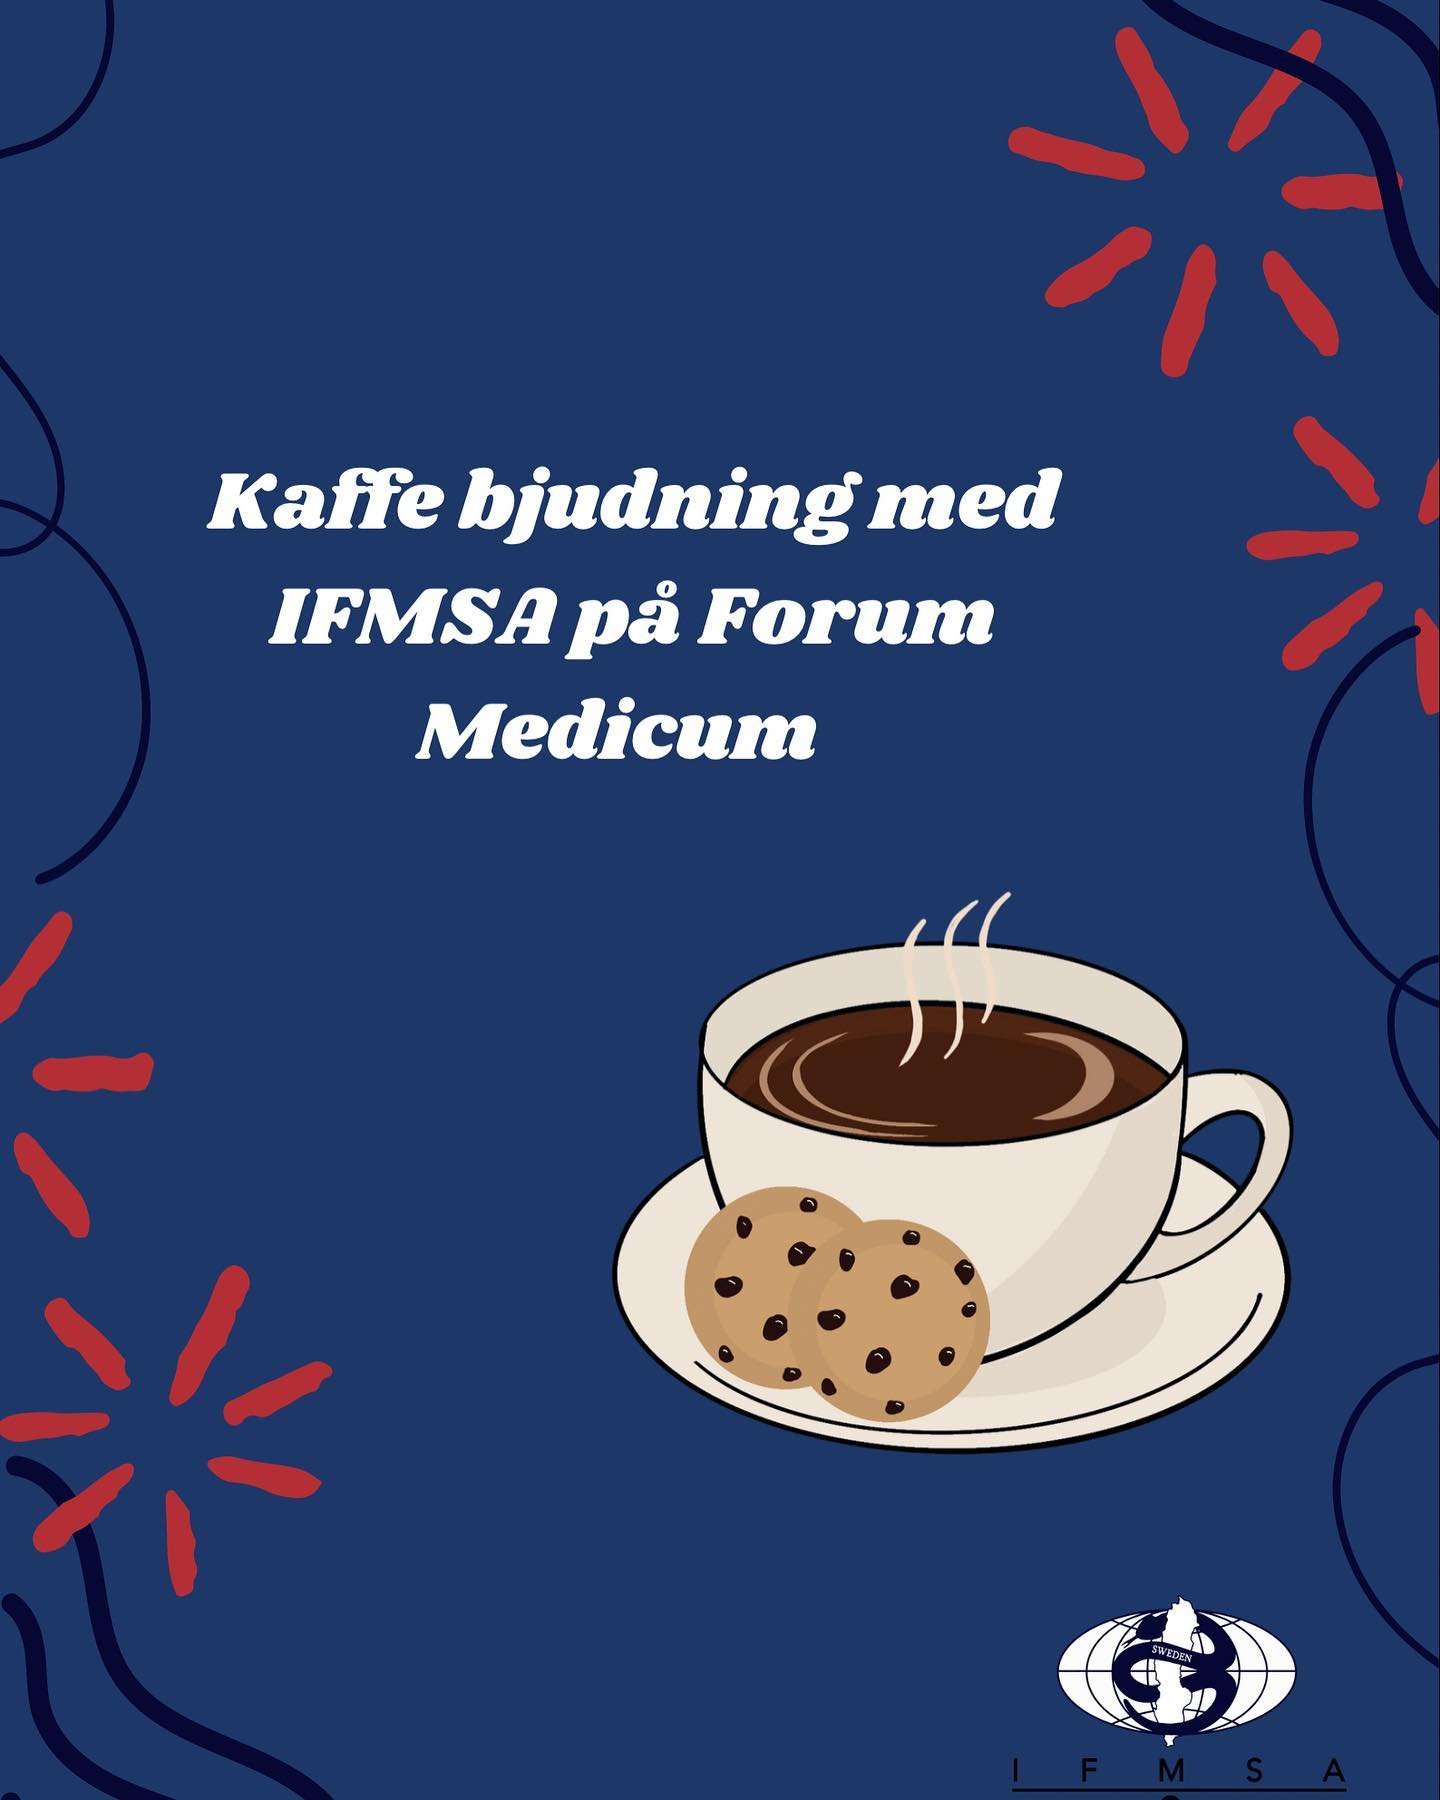 Missa inte IFMSAs kaffeevent!☕️🍪

Vi h&aring;ller till i entr&eacute;n p&aring; Forum medicum mellan 11:30-13:00 p&aring; utvalda fredagar. Drick kaffe, fika och f&aring; svar p&aring; dina fr&aring;gor om IFMSA💙💙

Datum: 
AIDS loppet 05/04
Donera